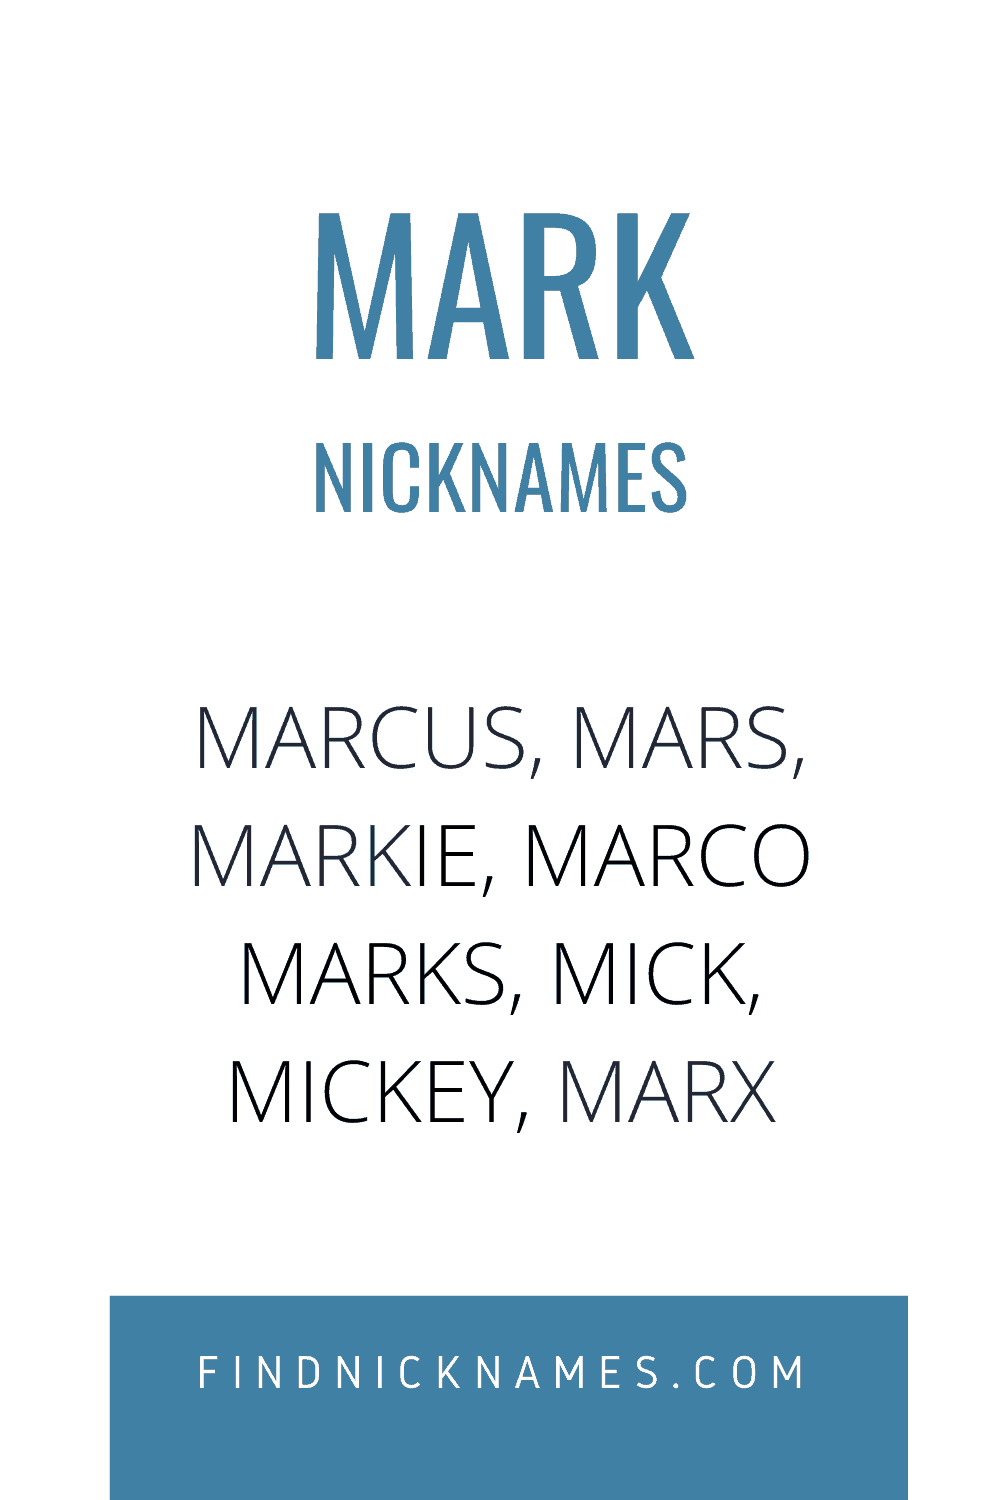 Nicknames. Cool nicknames. Mark ник. Nickname for guys. Имя dick